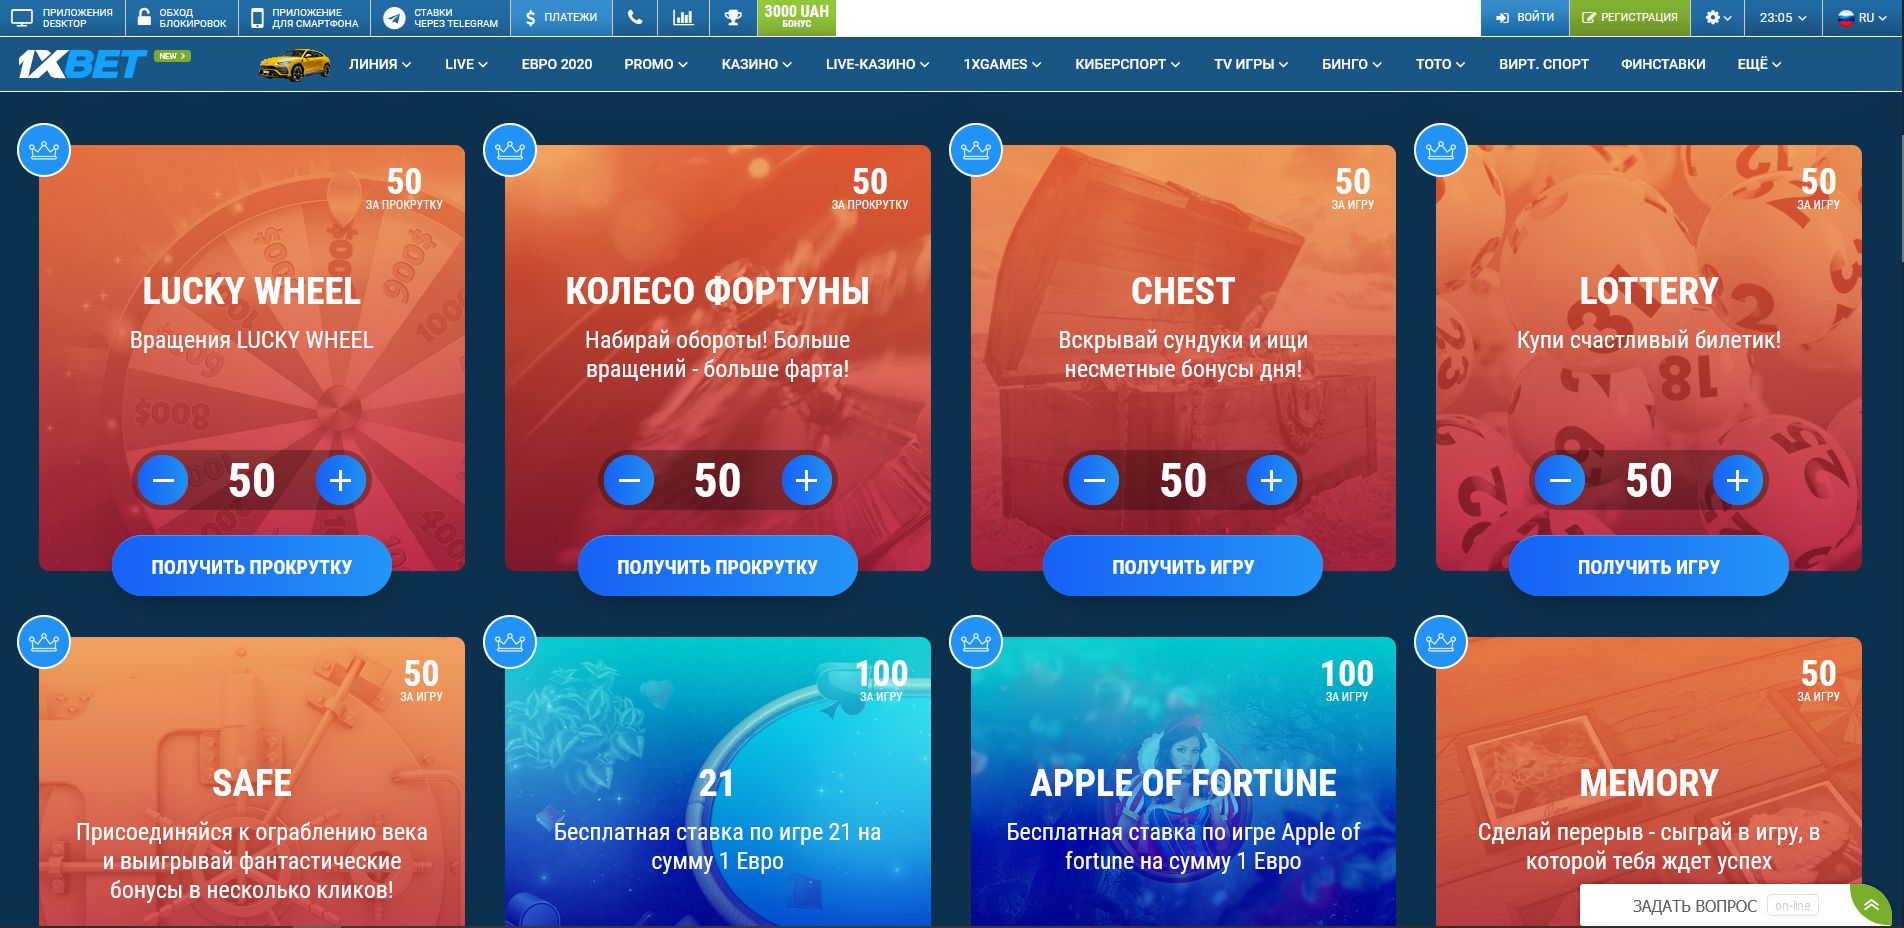 Букмекерские конторы 1xbet в москве онлайн казино с наименьшим депозитом